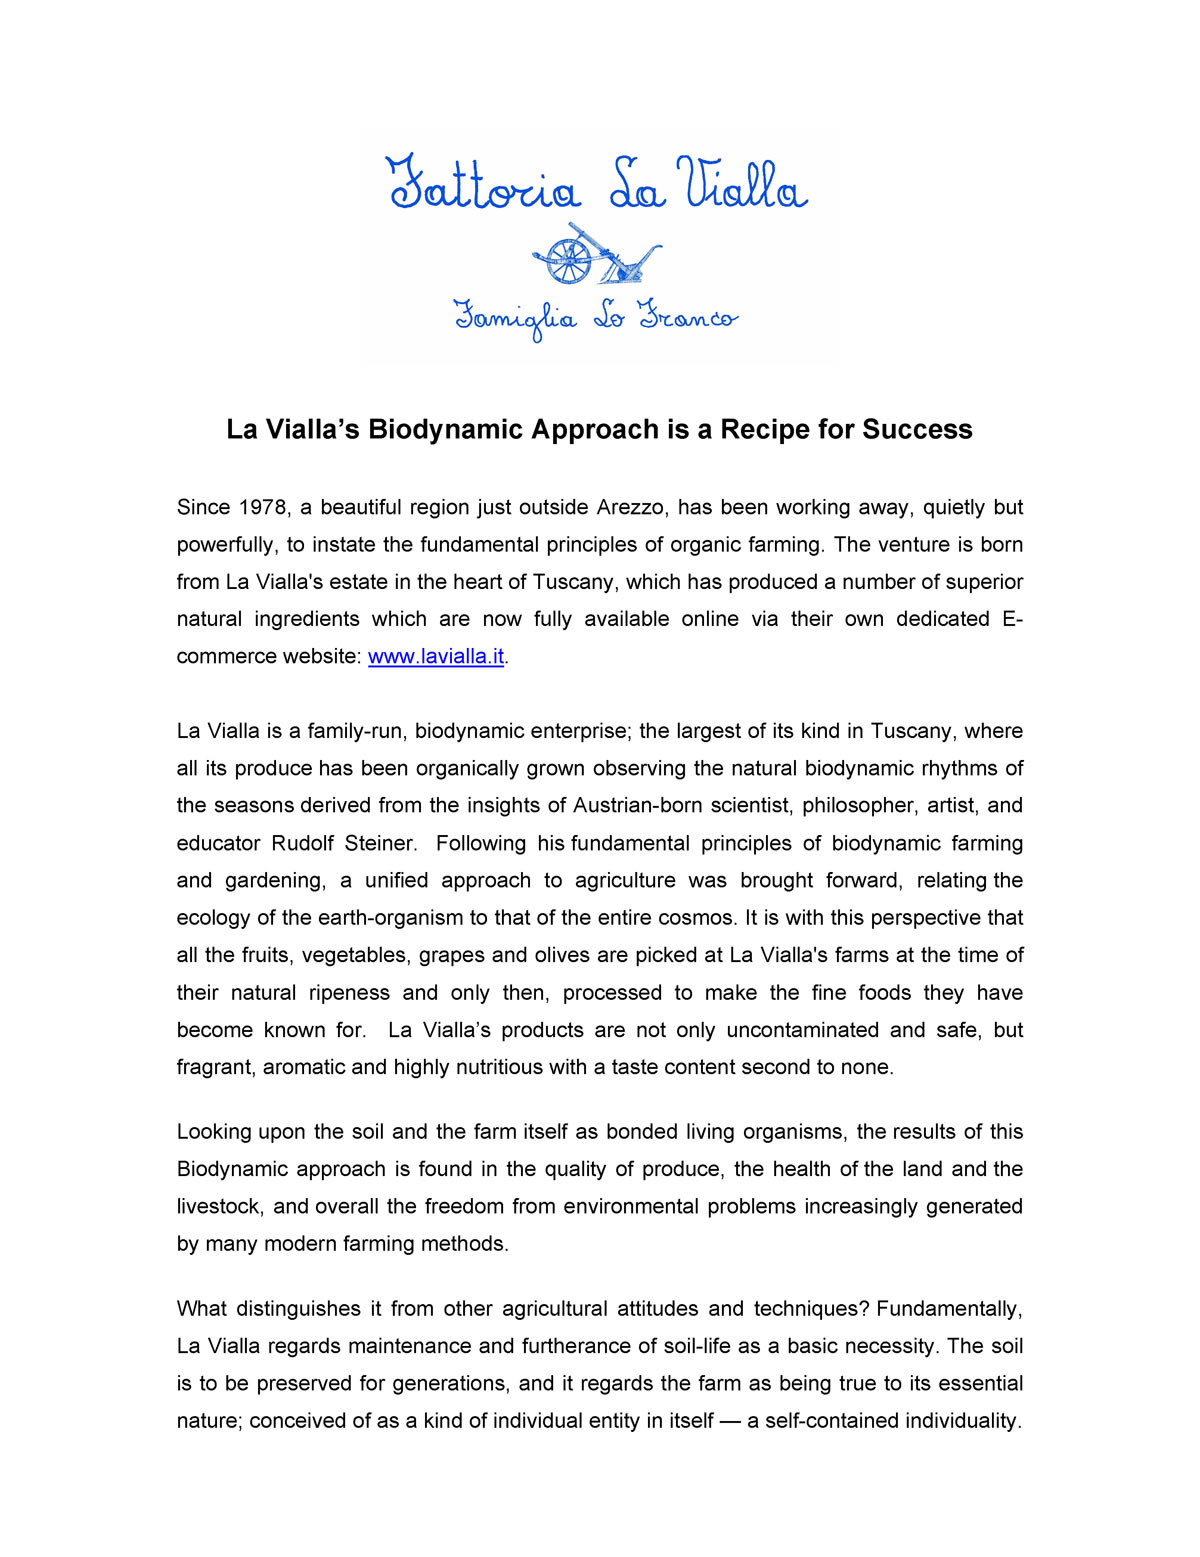 La Vialla's culture ~ a Recipe for Success_Page_1